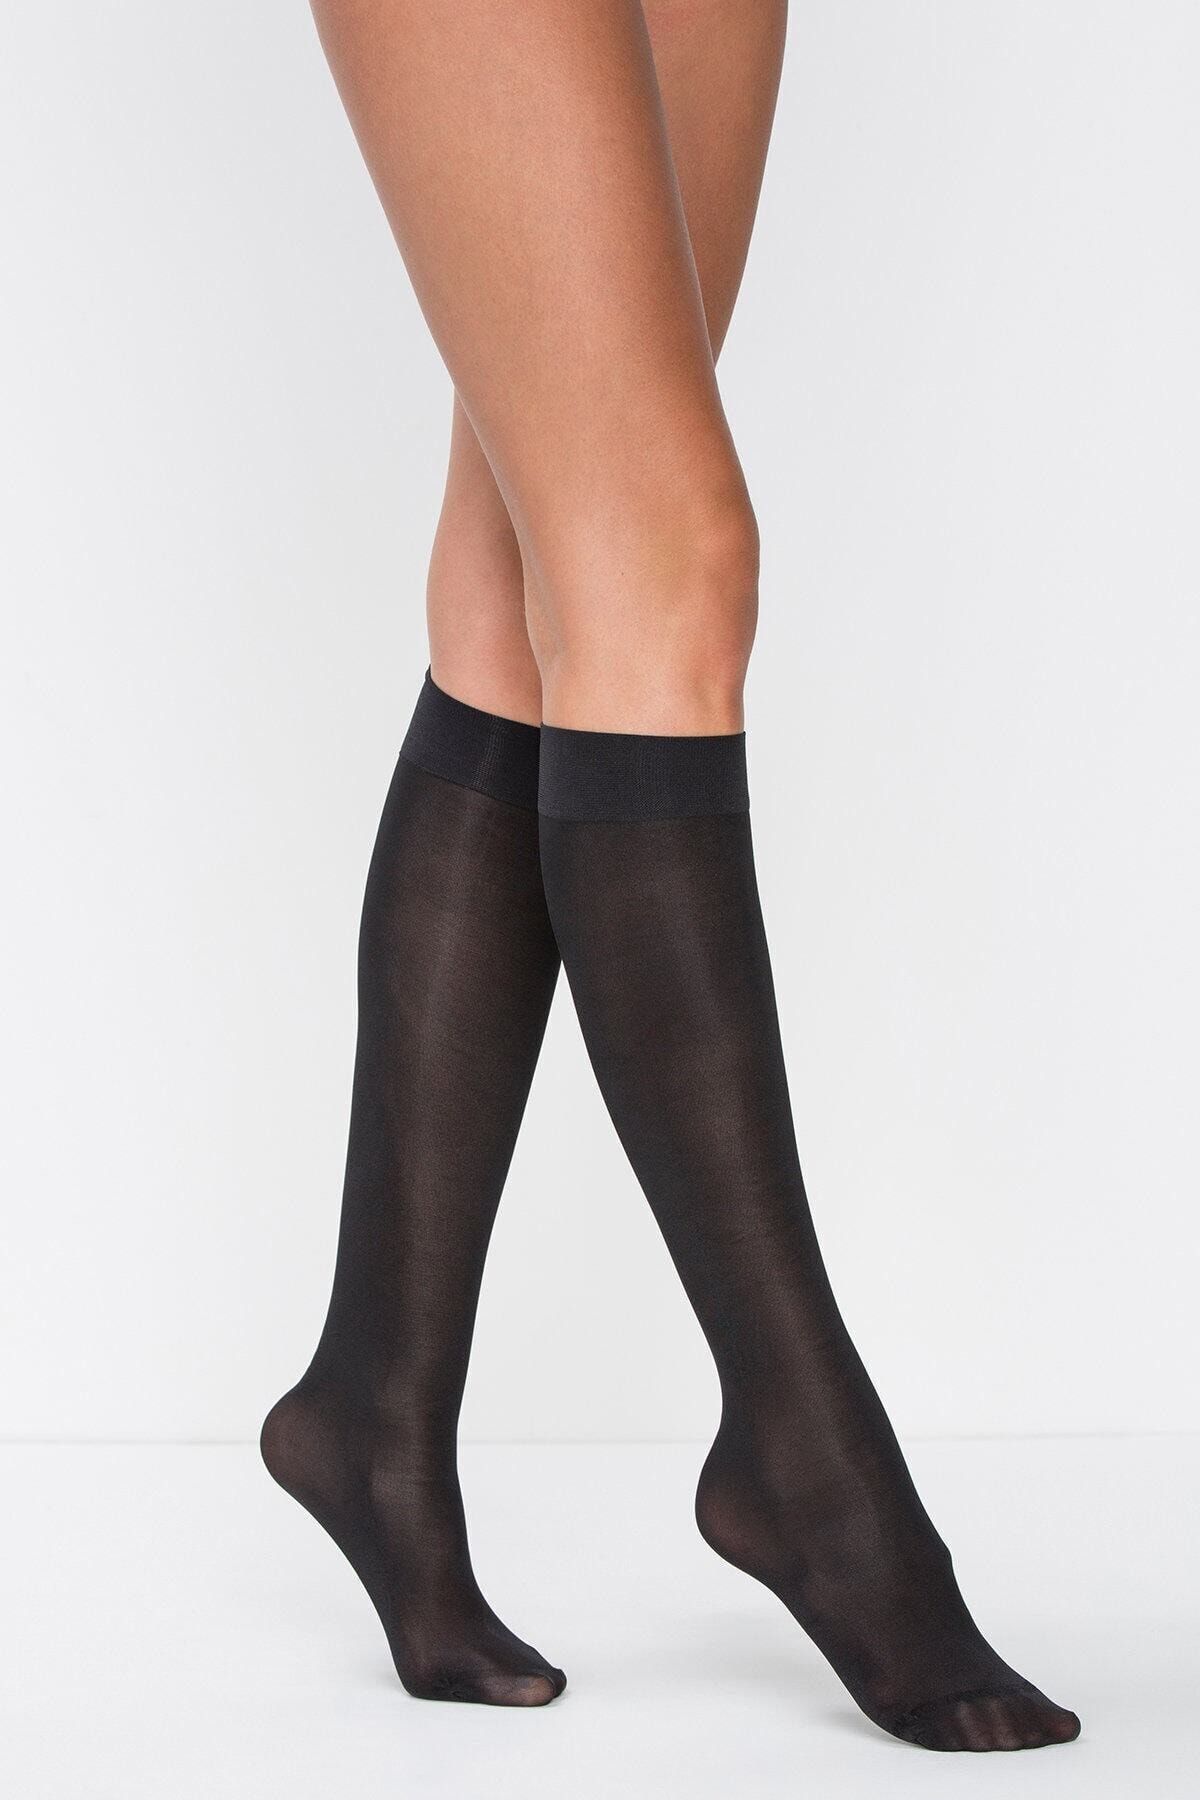 Penti Kadın Siyah Mikro 40 Diz Altı Çorap